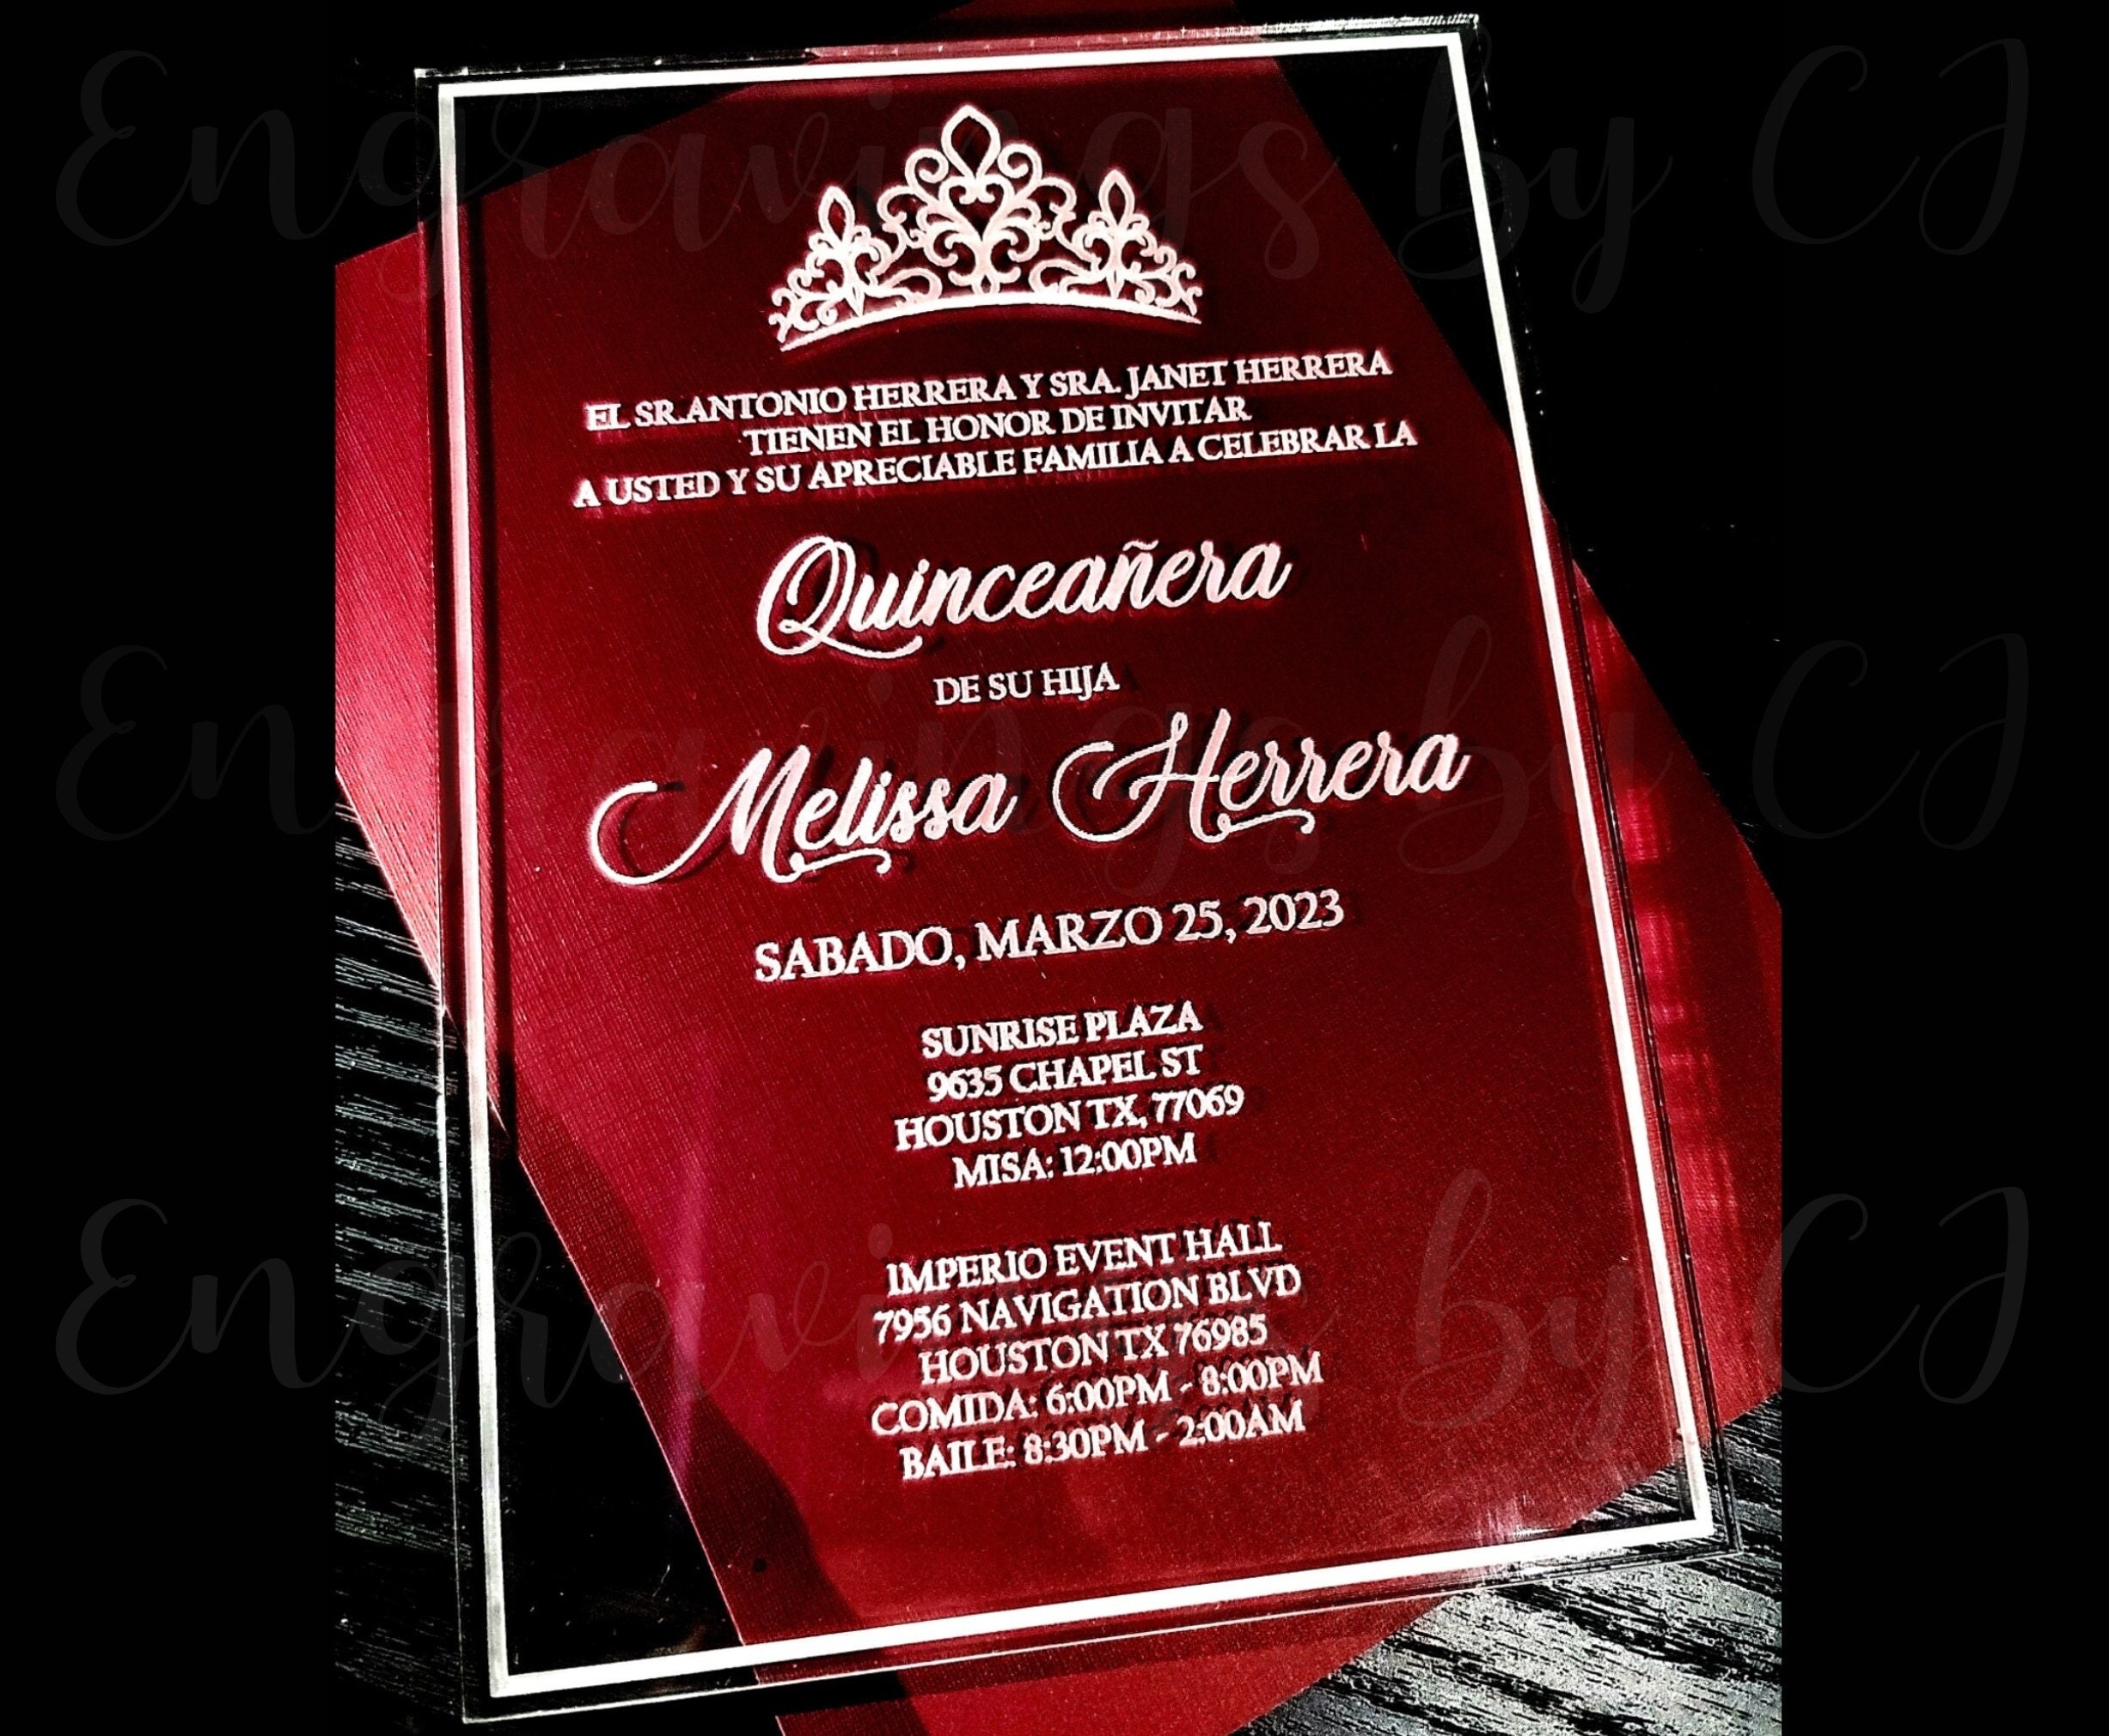 Invitaciones de Quinceañera (Spanish Quinceañera Invitations